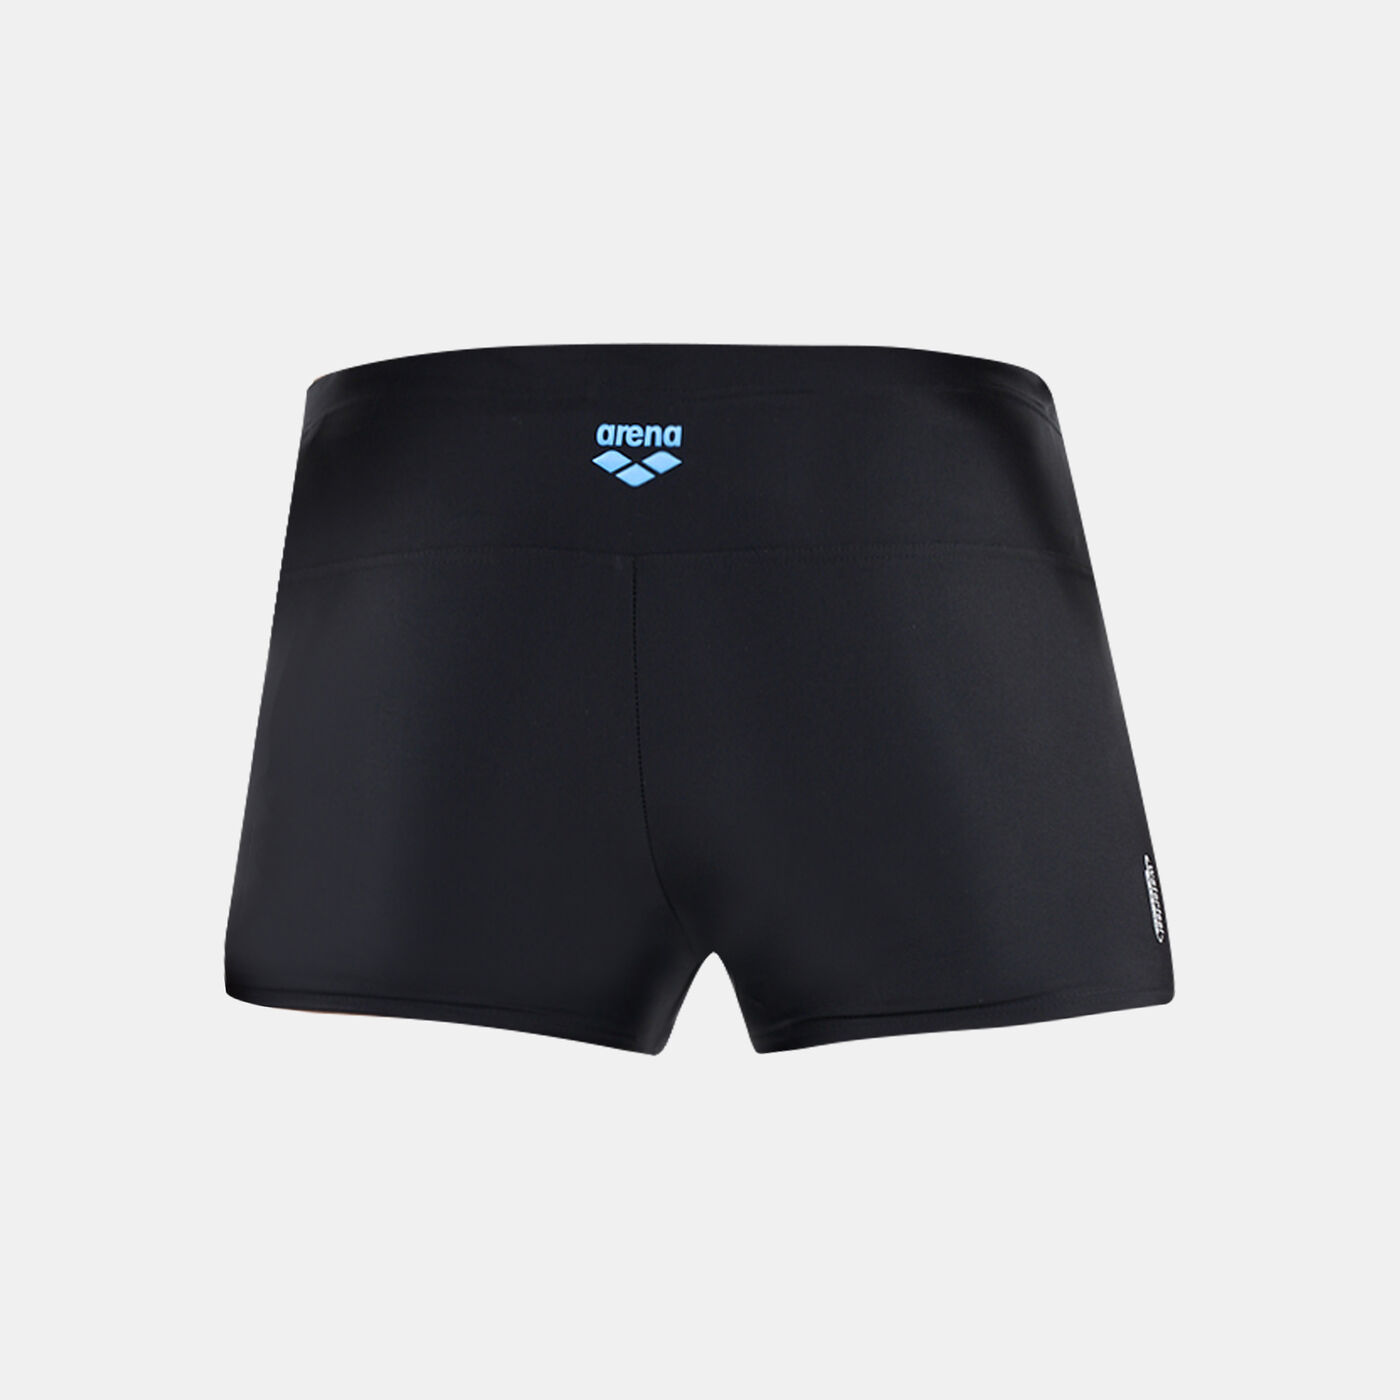 Men's Cruzeiro Swimming Shorts